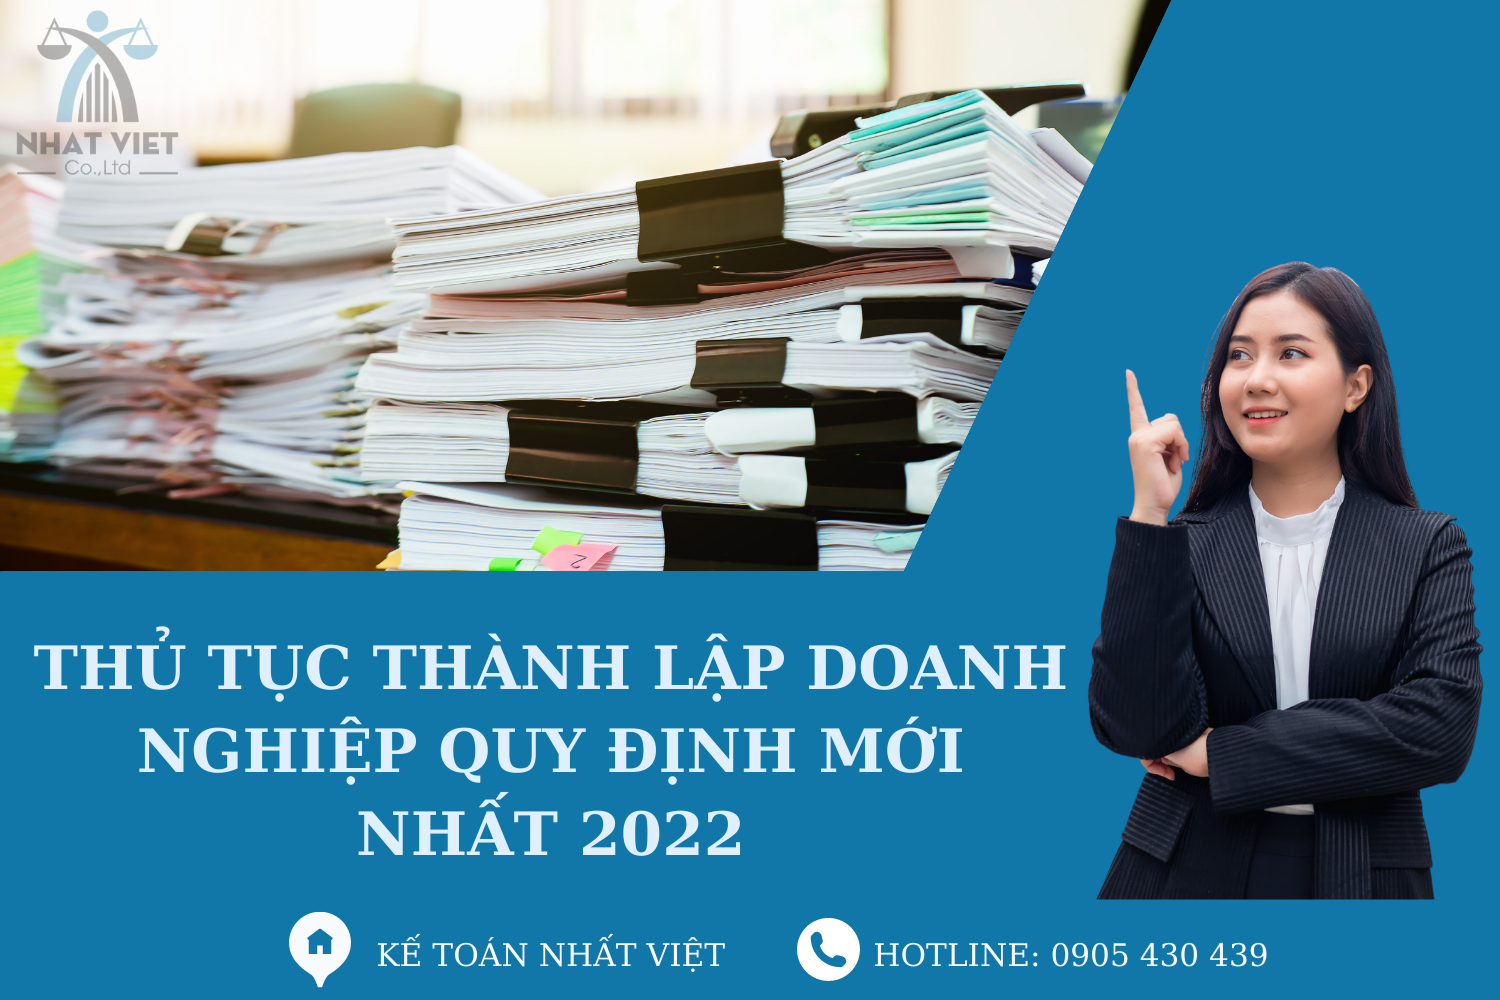 Dịch vụ thành lập doanh nghiệp - Kế Toán Nhất Việt - Công Ty TNHH Tư Vấn Quản Lý Nhất Việt